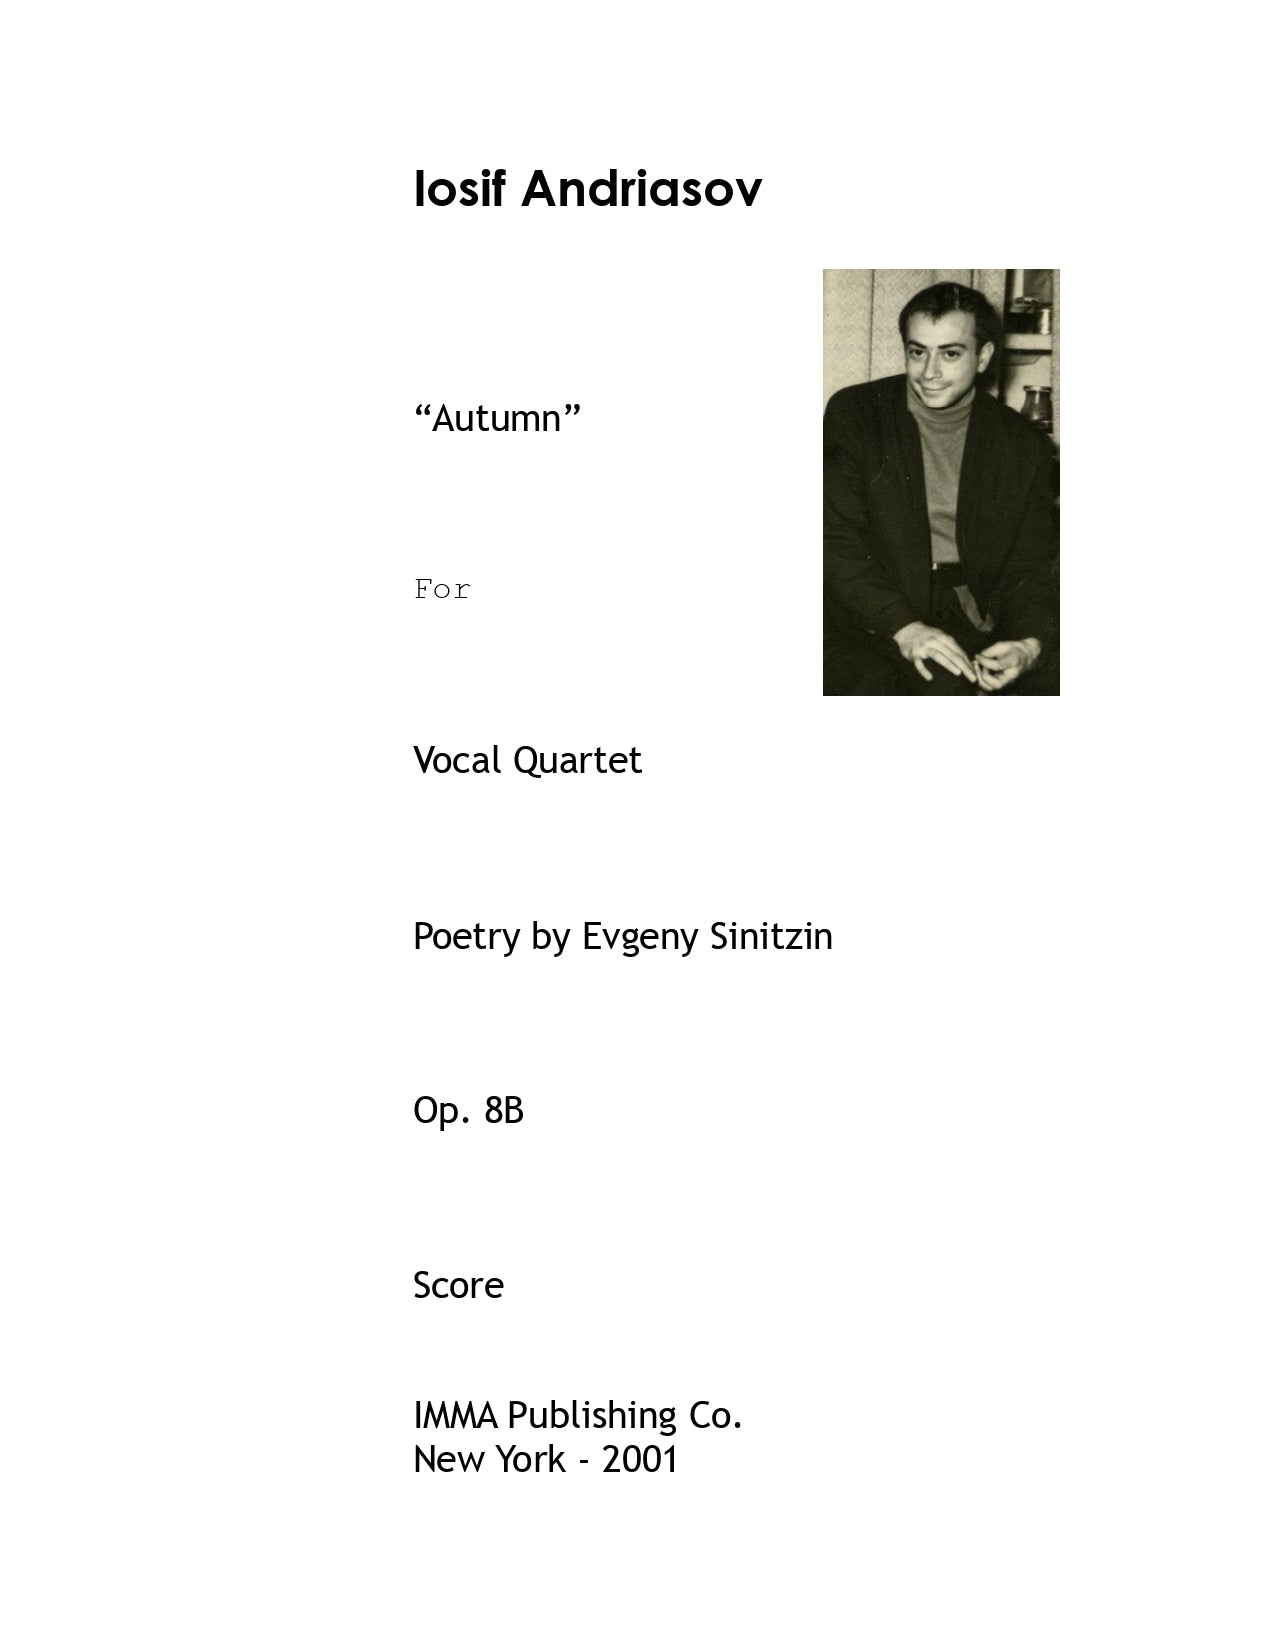 022. Iosif Andriasov: "Autumn", Op. 8B for Vocal Quartet.